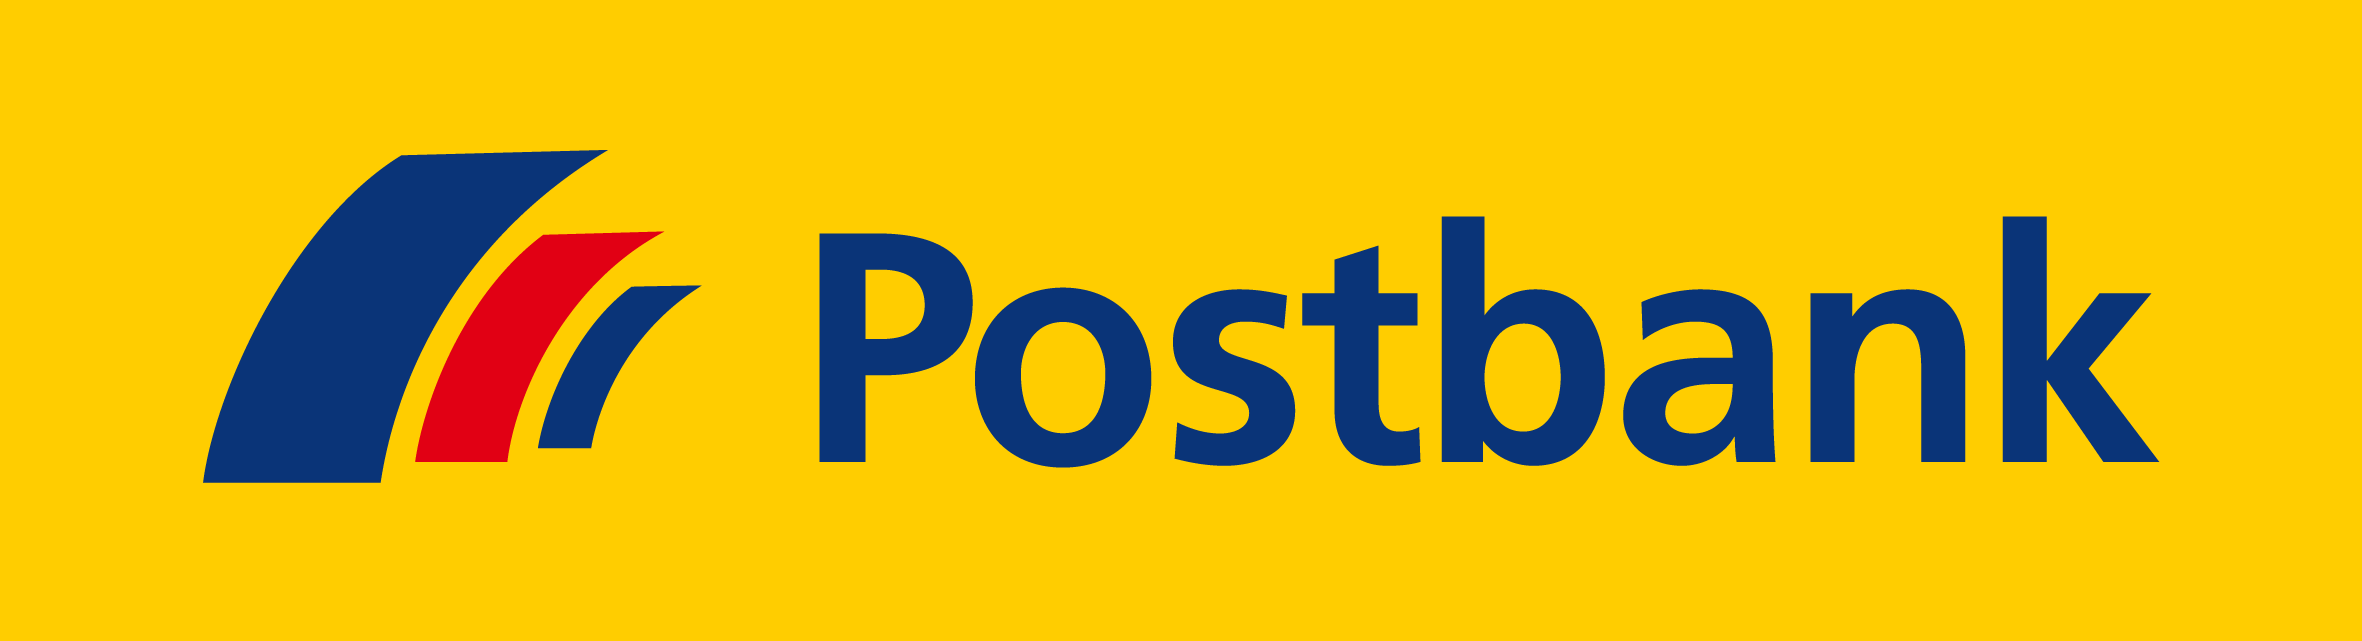 Postbank Sparplan Aktionsempfehlung Januar